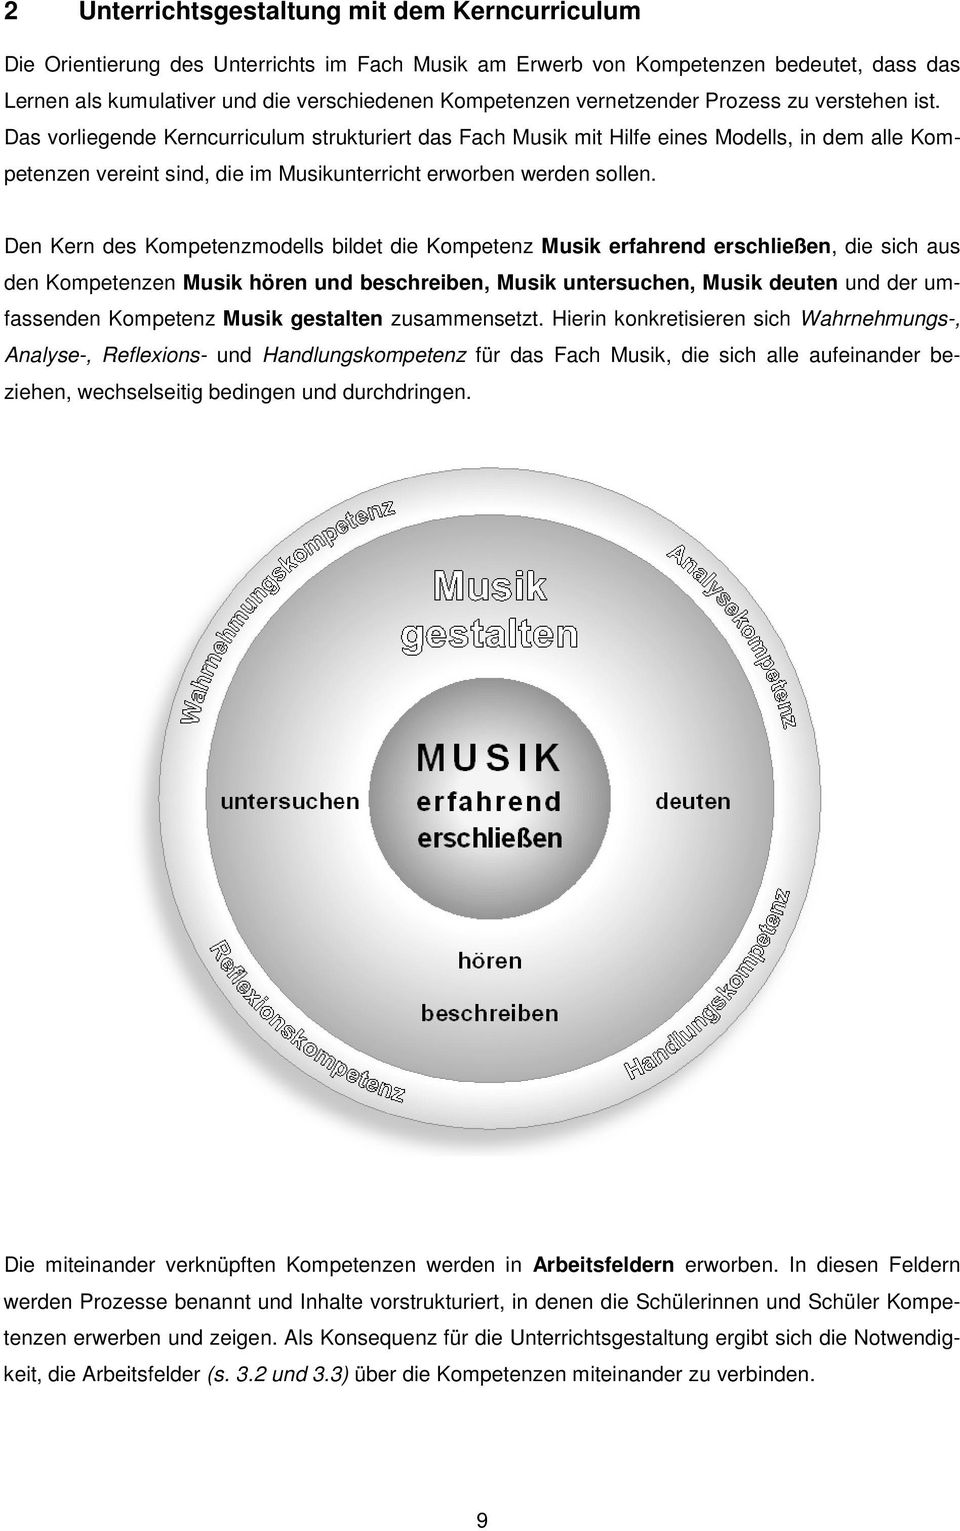 Das vorliegende Kerncurriculum strukturiert das Fach Musik mit Hilfe eines Modells, in dem alle Kompetenzen vereint sind, die im Musikunterricht erworben werden sollen.